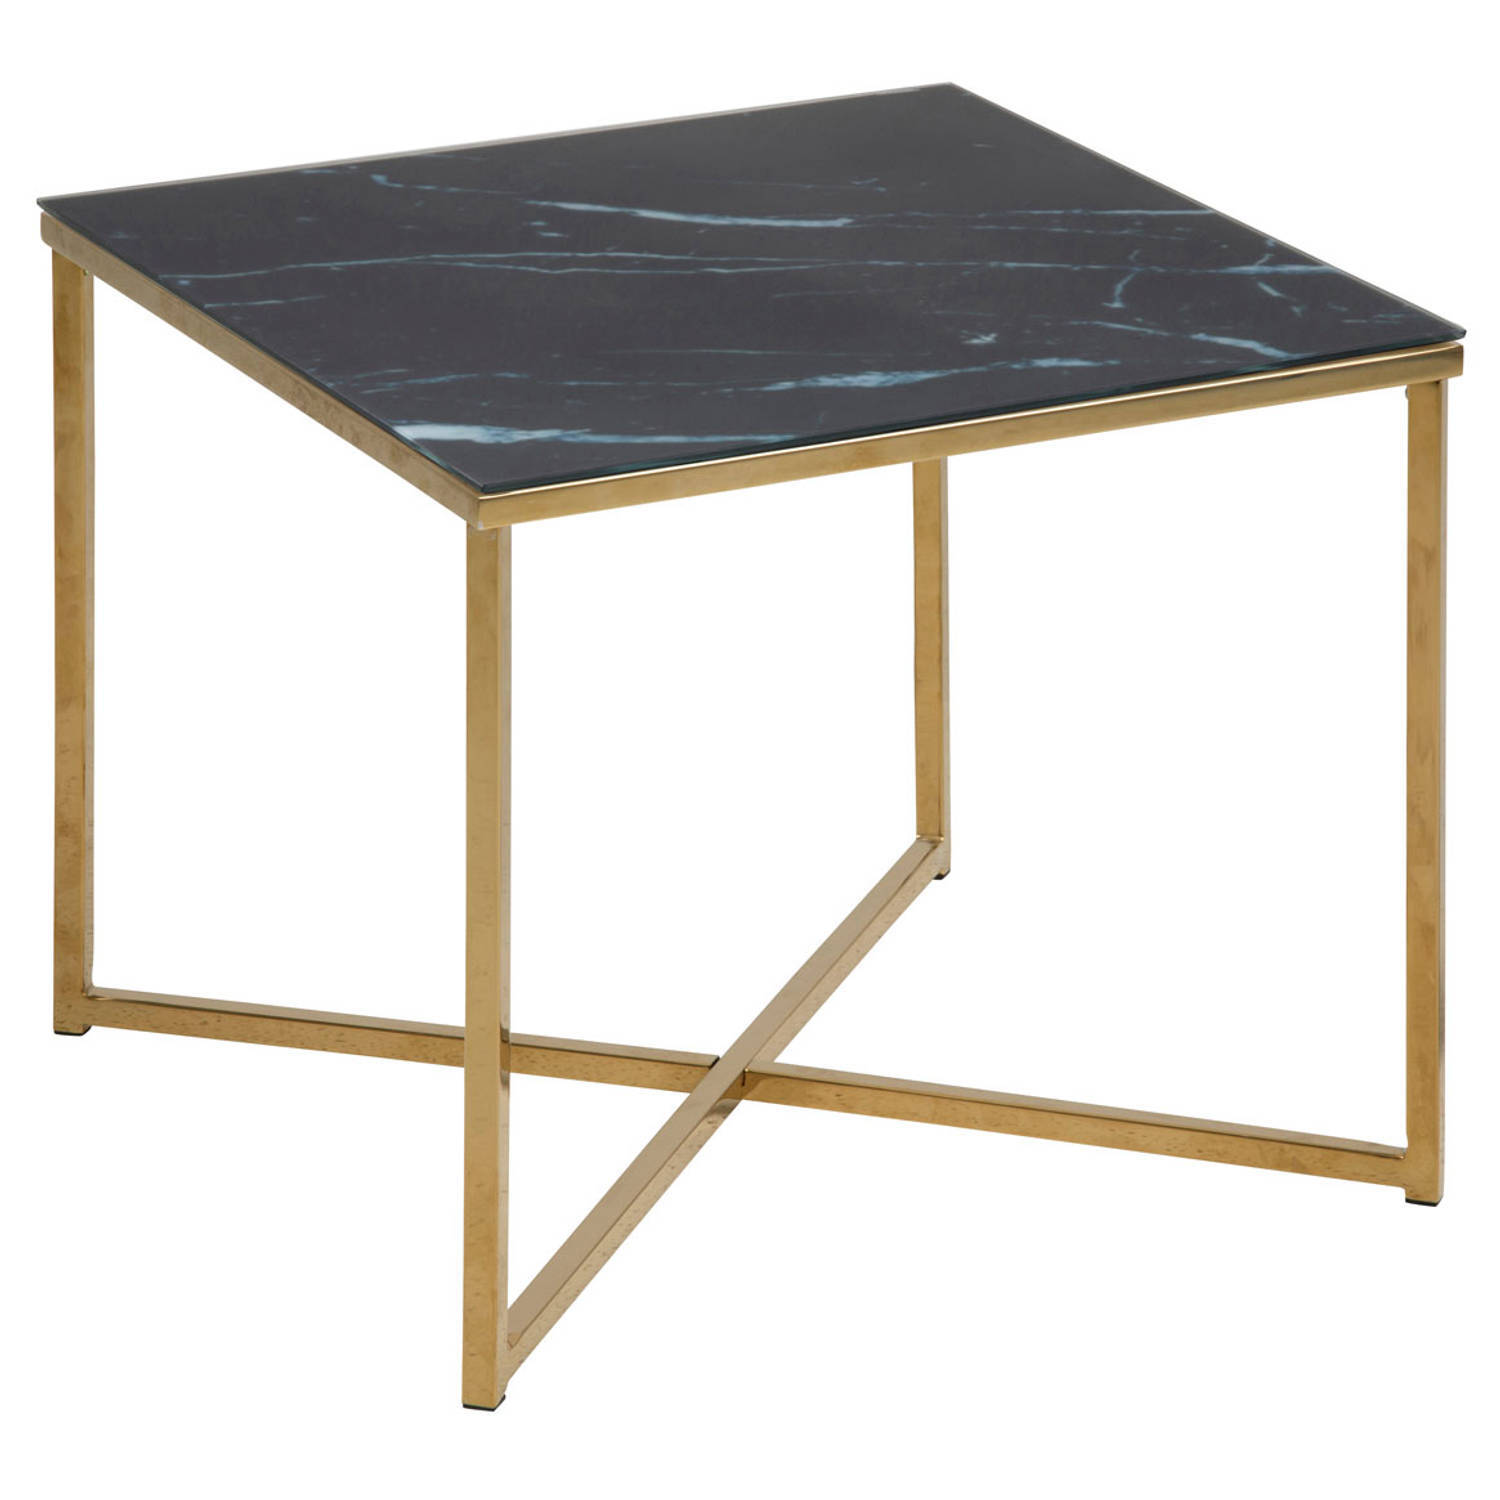 AC Design Furniture Antje vierkante bijzettafel, glazen tafelblad met zwarte marmerlook en gouden metalen voet, elegante bijzettafel woonkamer, accenttafel, 1 stuk